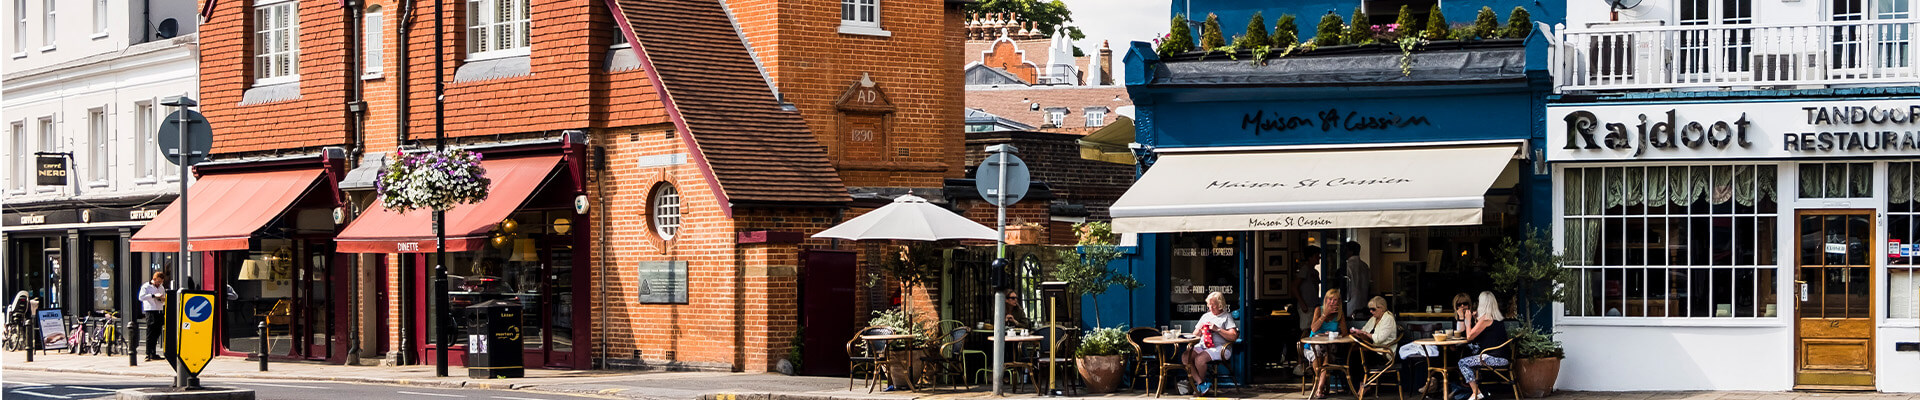 Restaurants on Garratt Lane, Wimbledon